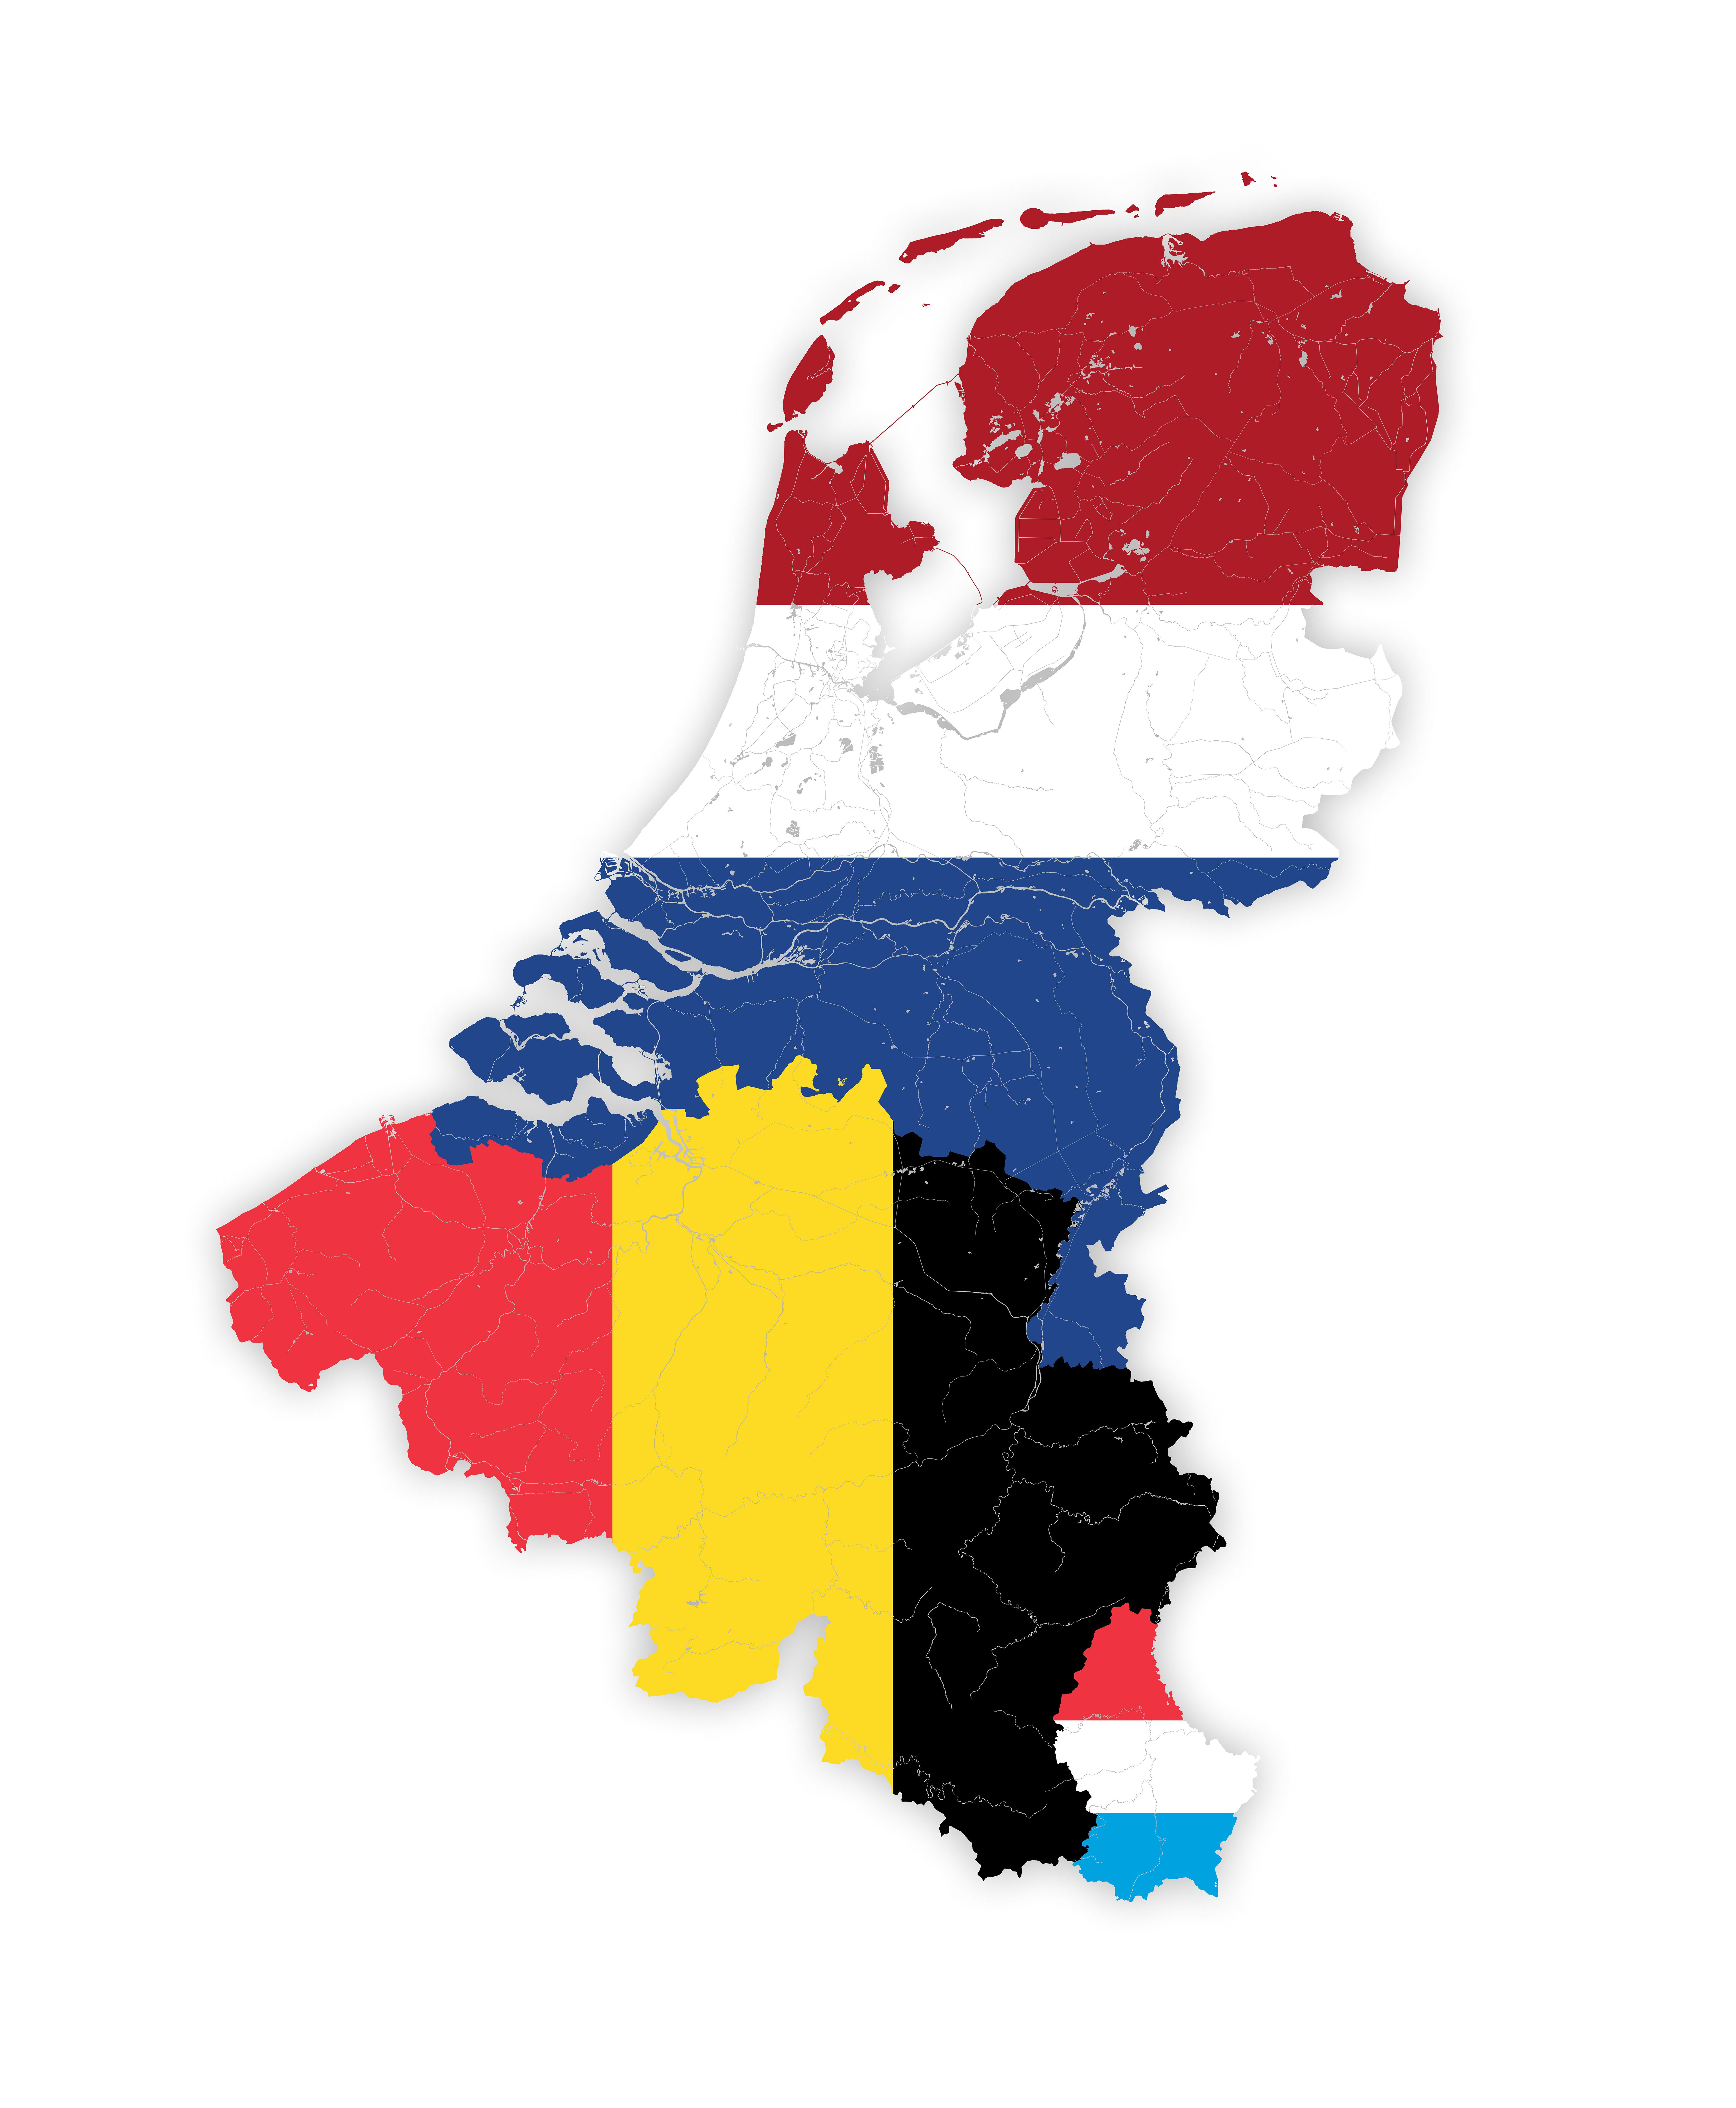 Die BENELUX Region - der IT Markt in Belgien, den Niederlanden und Luxemburg